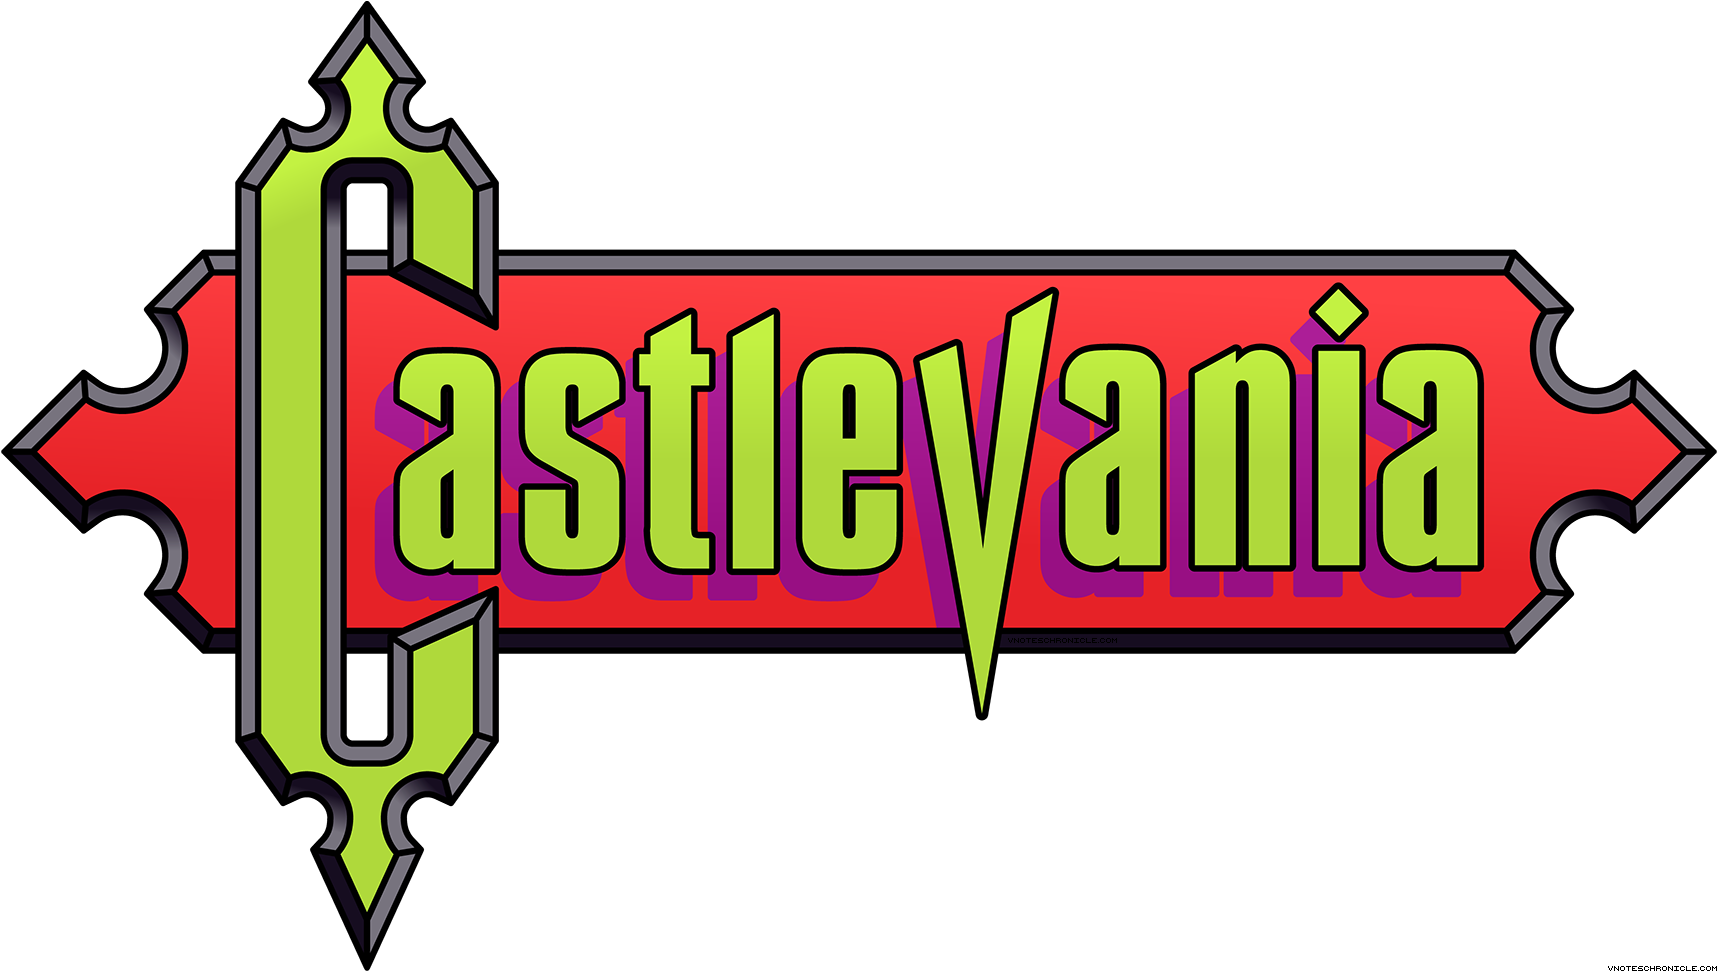 Castlevania - 01 - Castlevania Logo Png (1800x1050)